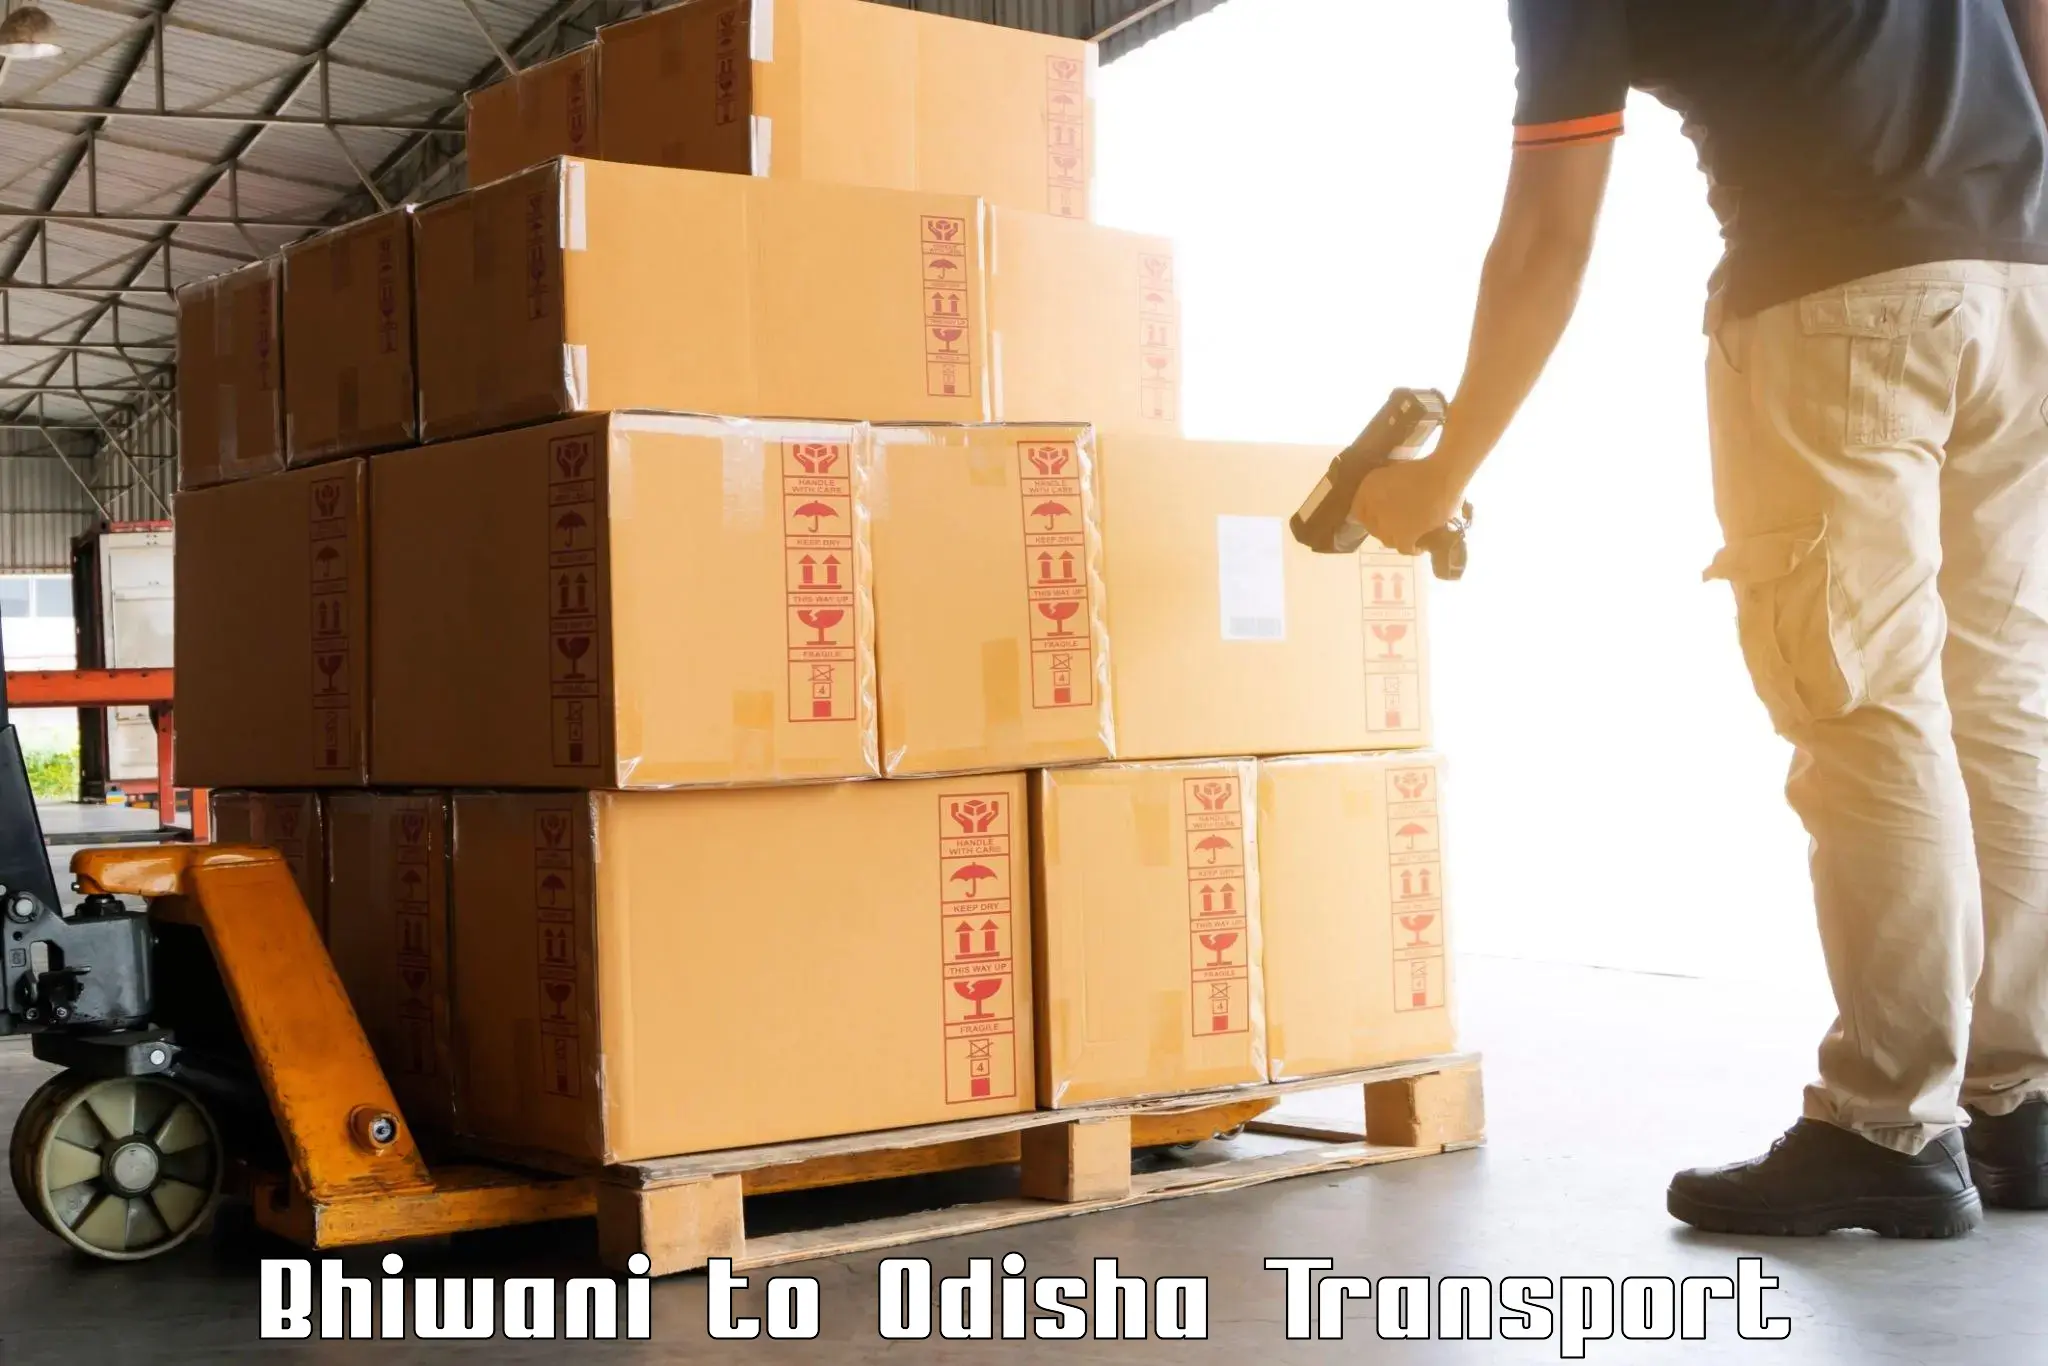 Air cargo transport services Bhiwani to Raikia